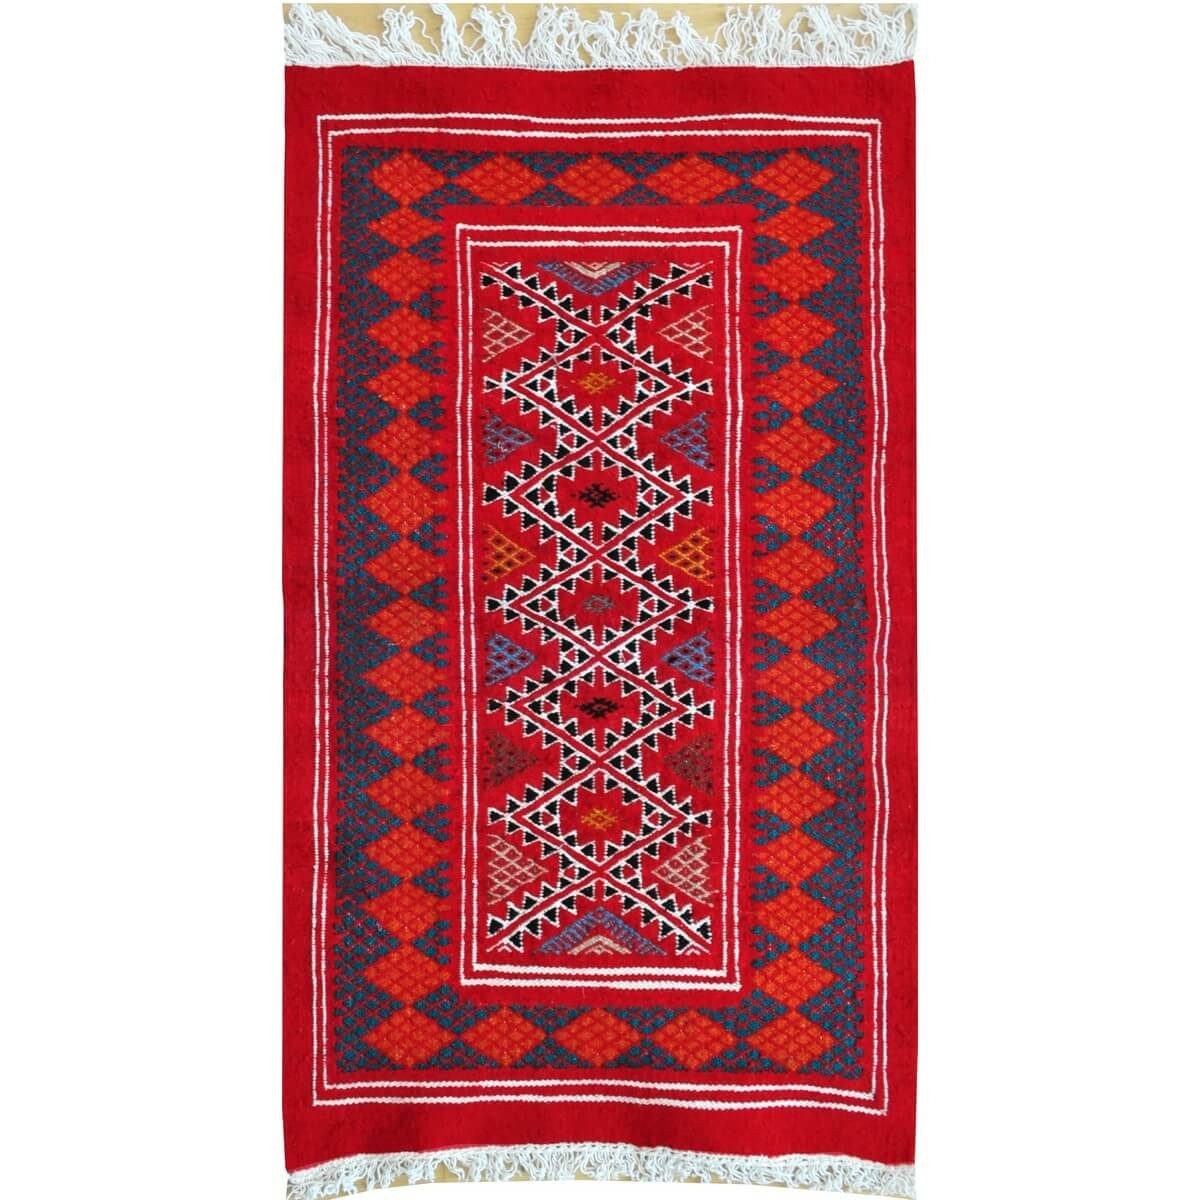 Tapis berbère Tapis Kilim Mellila 60x100 Rouge/Bleu (Tissé main, Laine, Tunisie) Tapis kilim tunisien style tapis marocain. Tapi